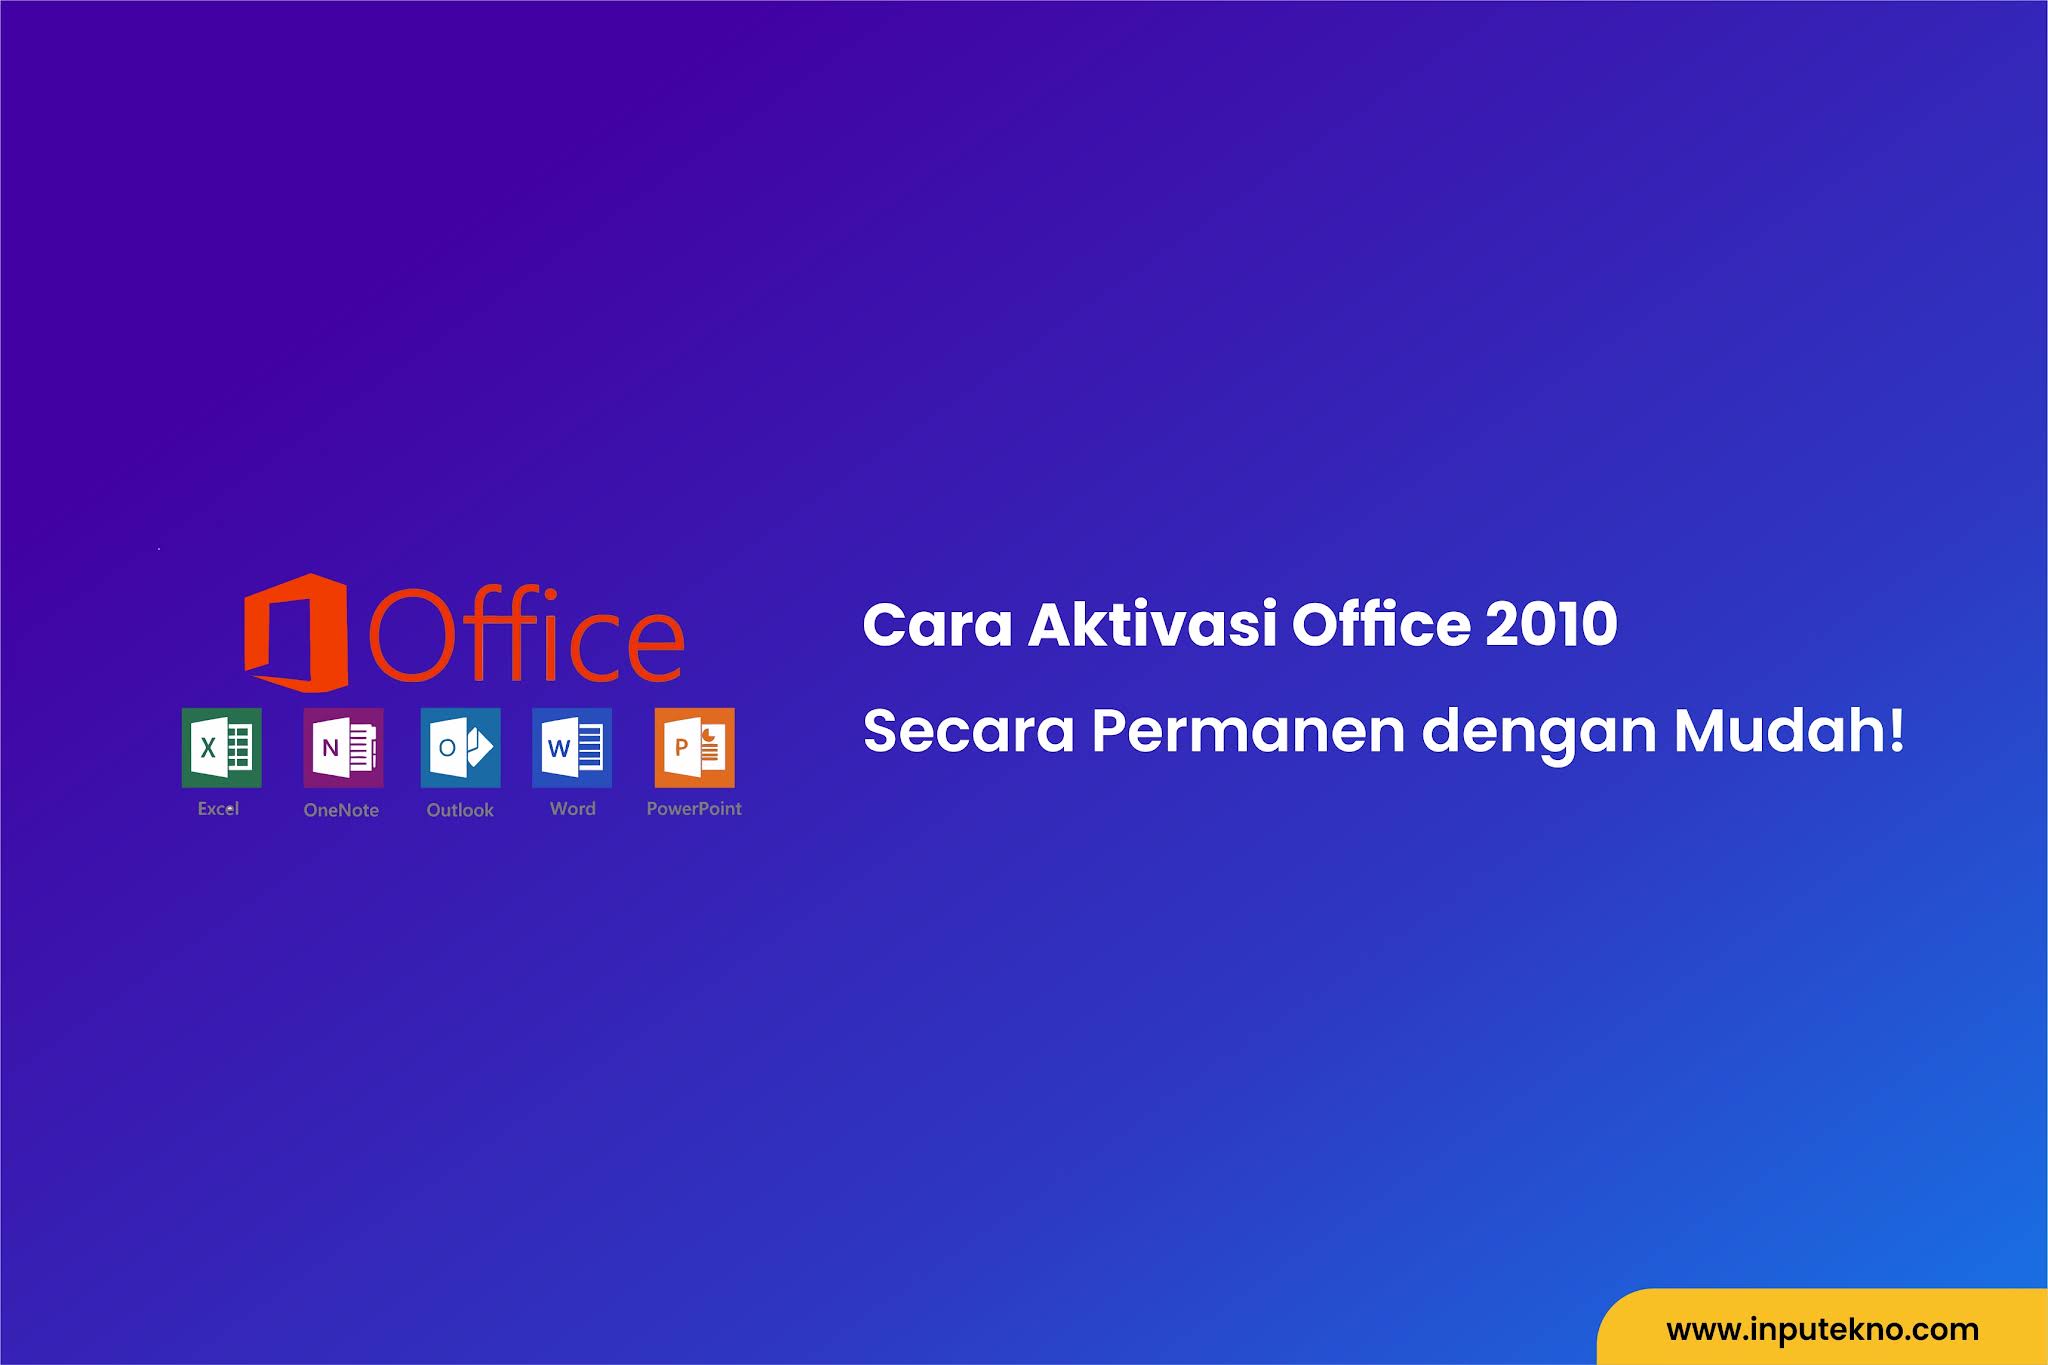 Cara Aktivasi Office 2010 Permanen